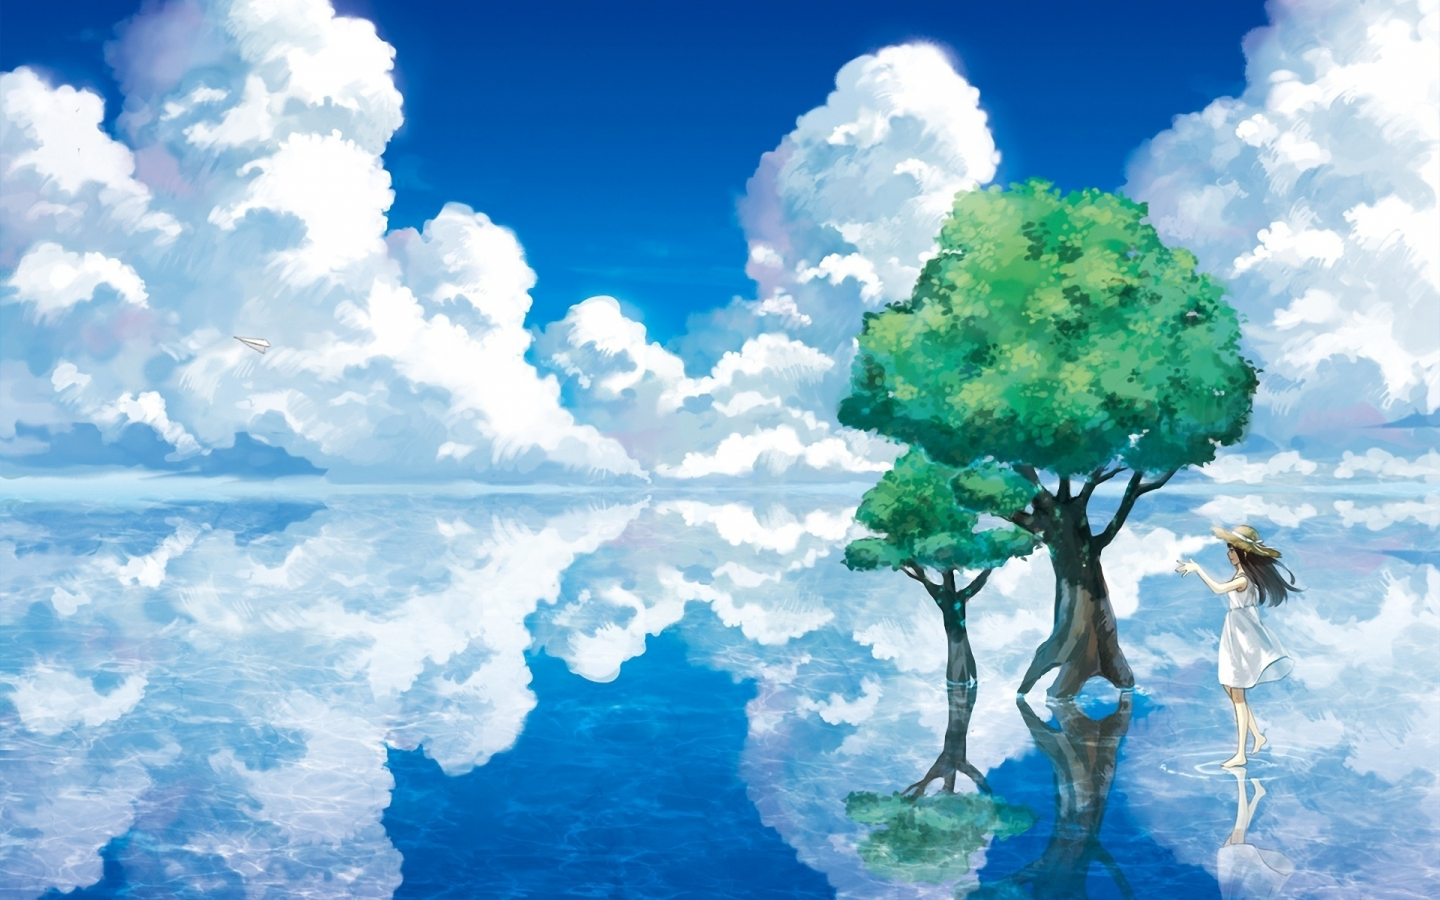 деревья, отражение, озеро, шляпа, арт, вода, бумажный самолетик, девочка, облака, пейзаж